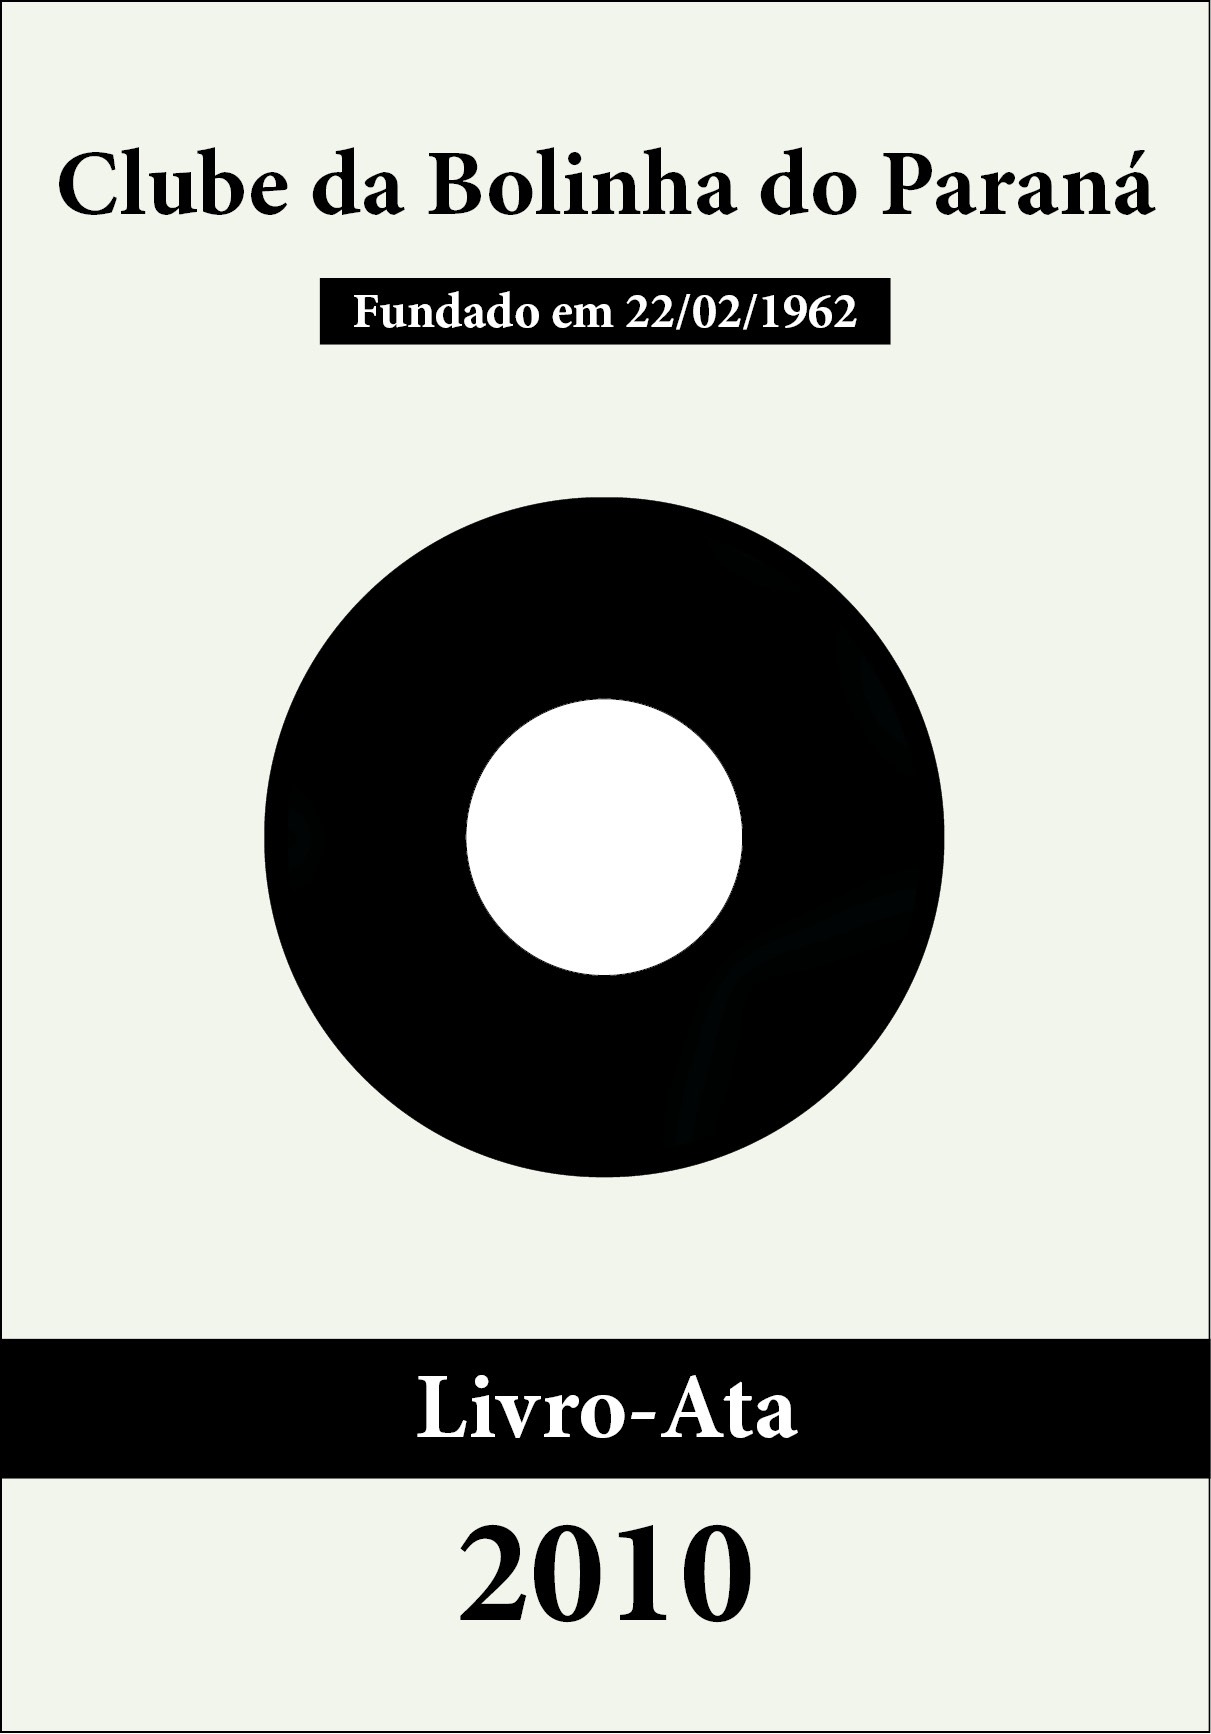 Bolinha - Livro-Ata 2010